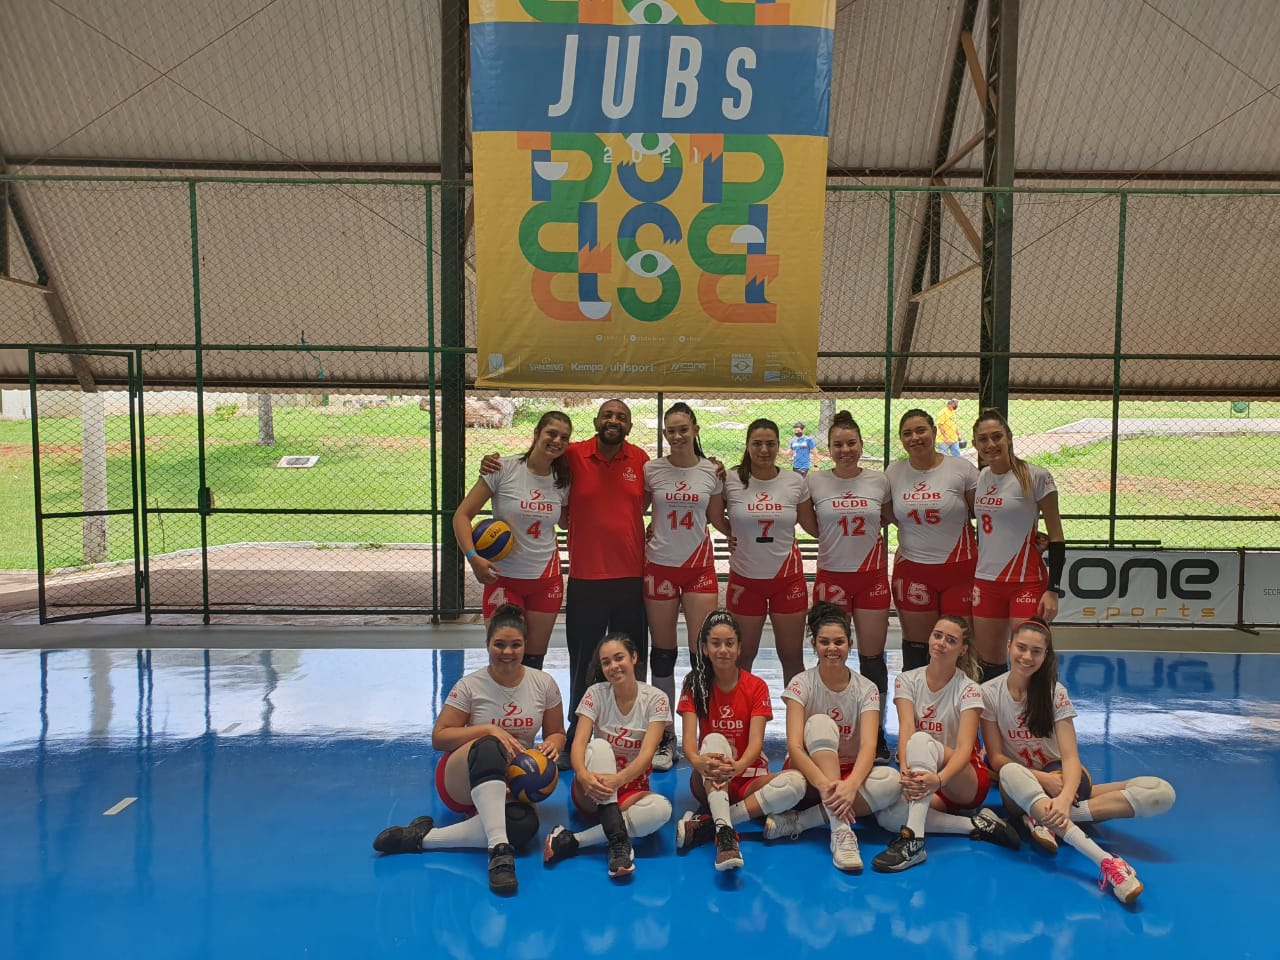 Equipe de vôlei feminina vence por 3 sets a zero a Unifap no JUBs 2021